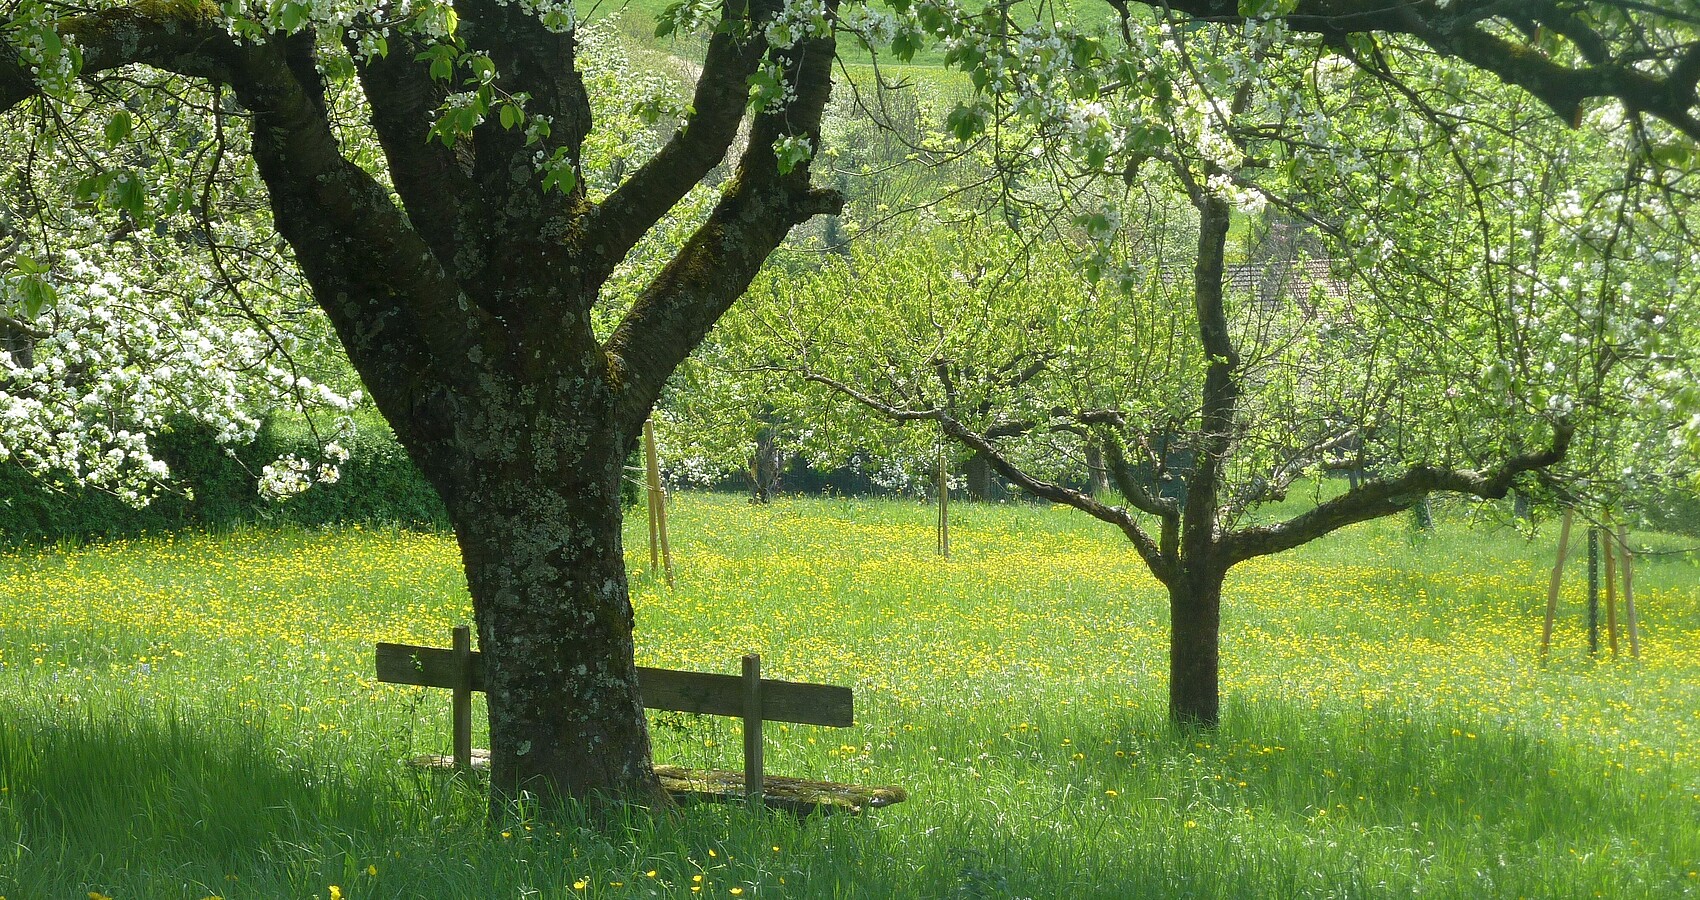 Das Bild zeigt mehrere Bäume auf einer bunten Wiese bei Sonnenschein; an einem Baum steht eine Bank